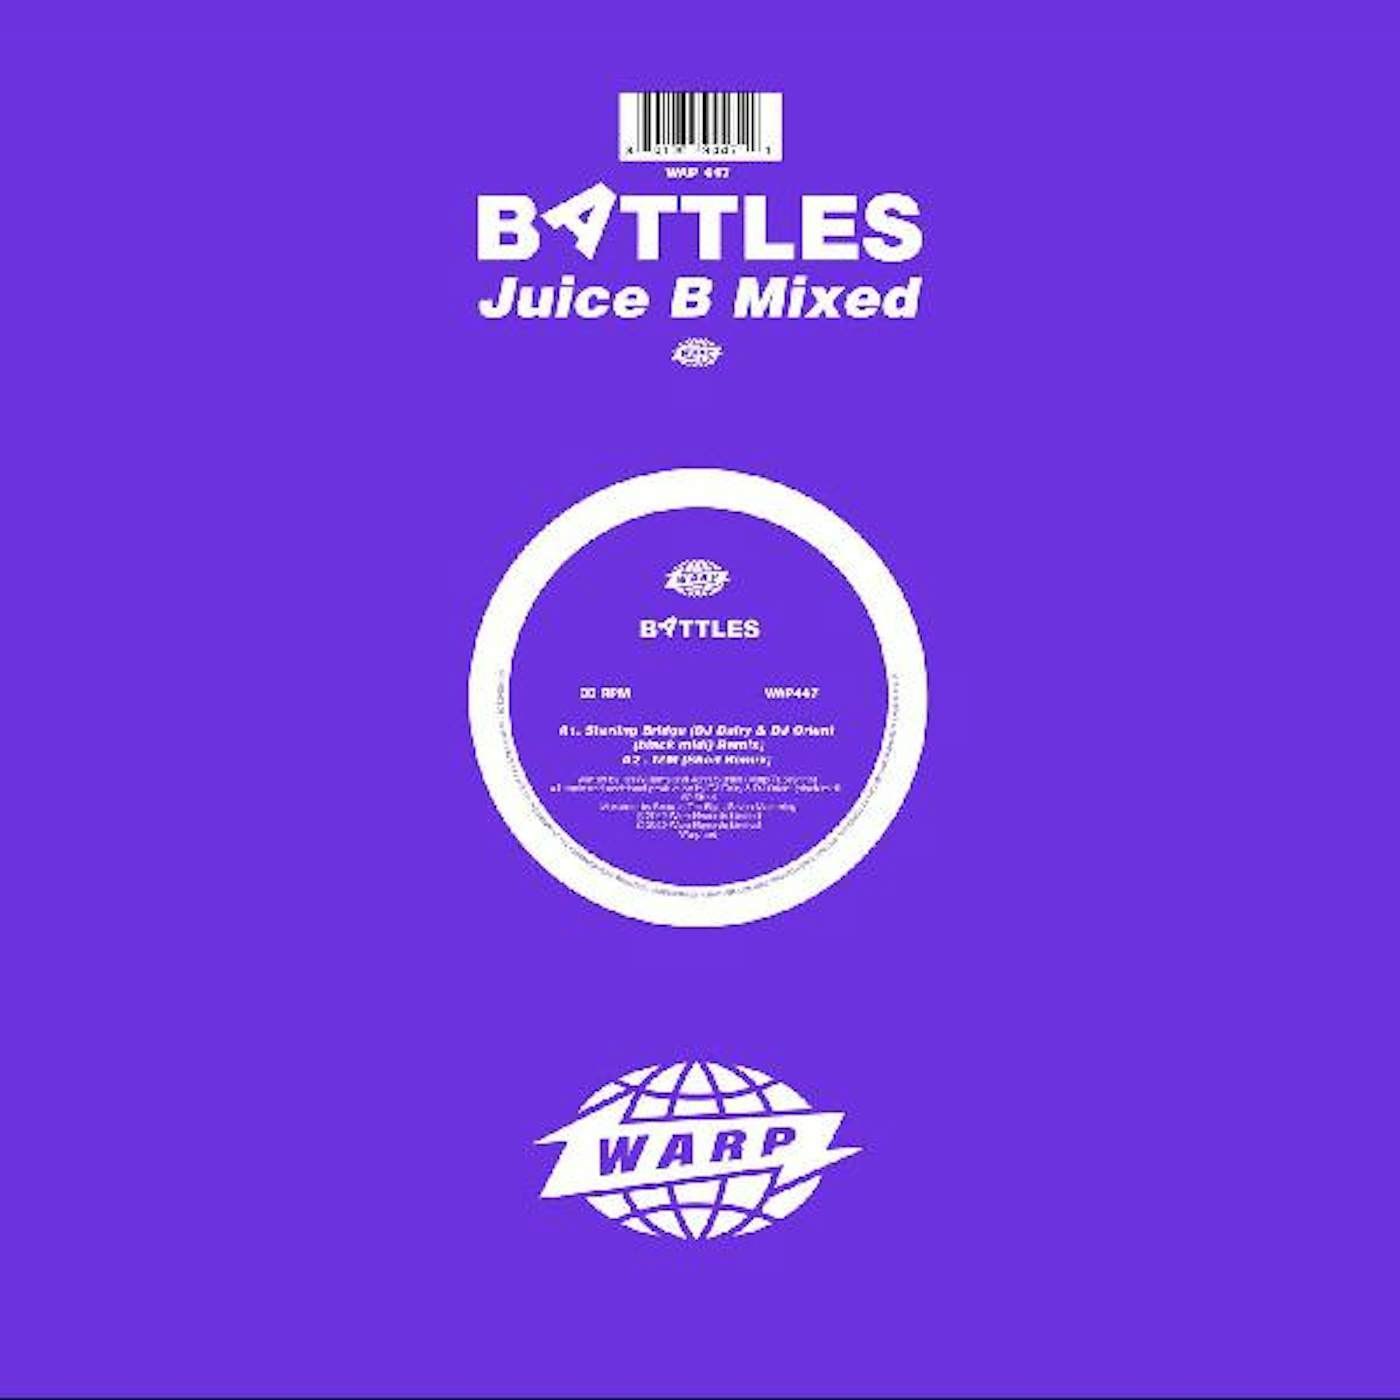 Battles Juice B Mixed Vinyl Record